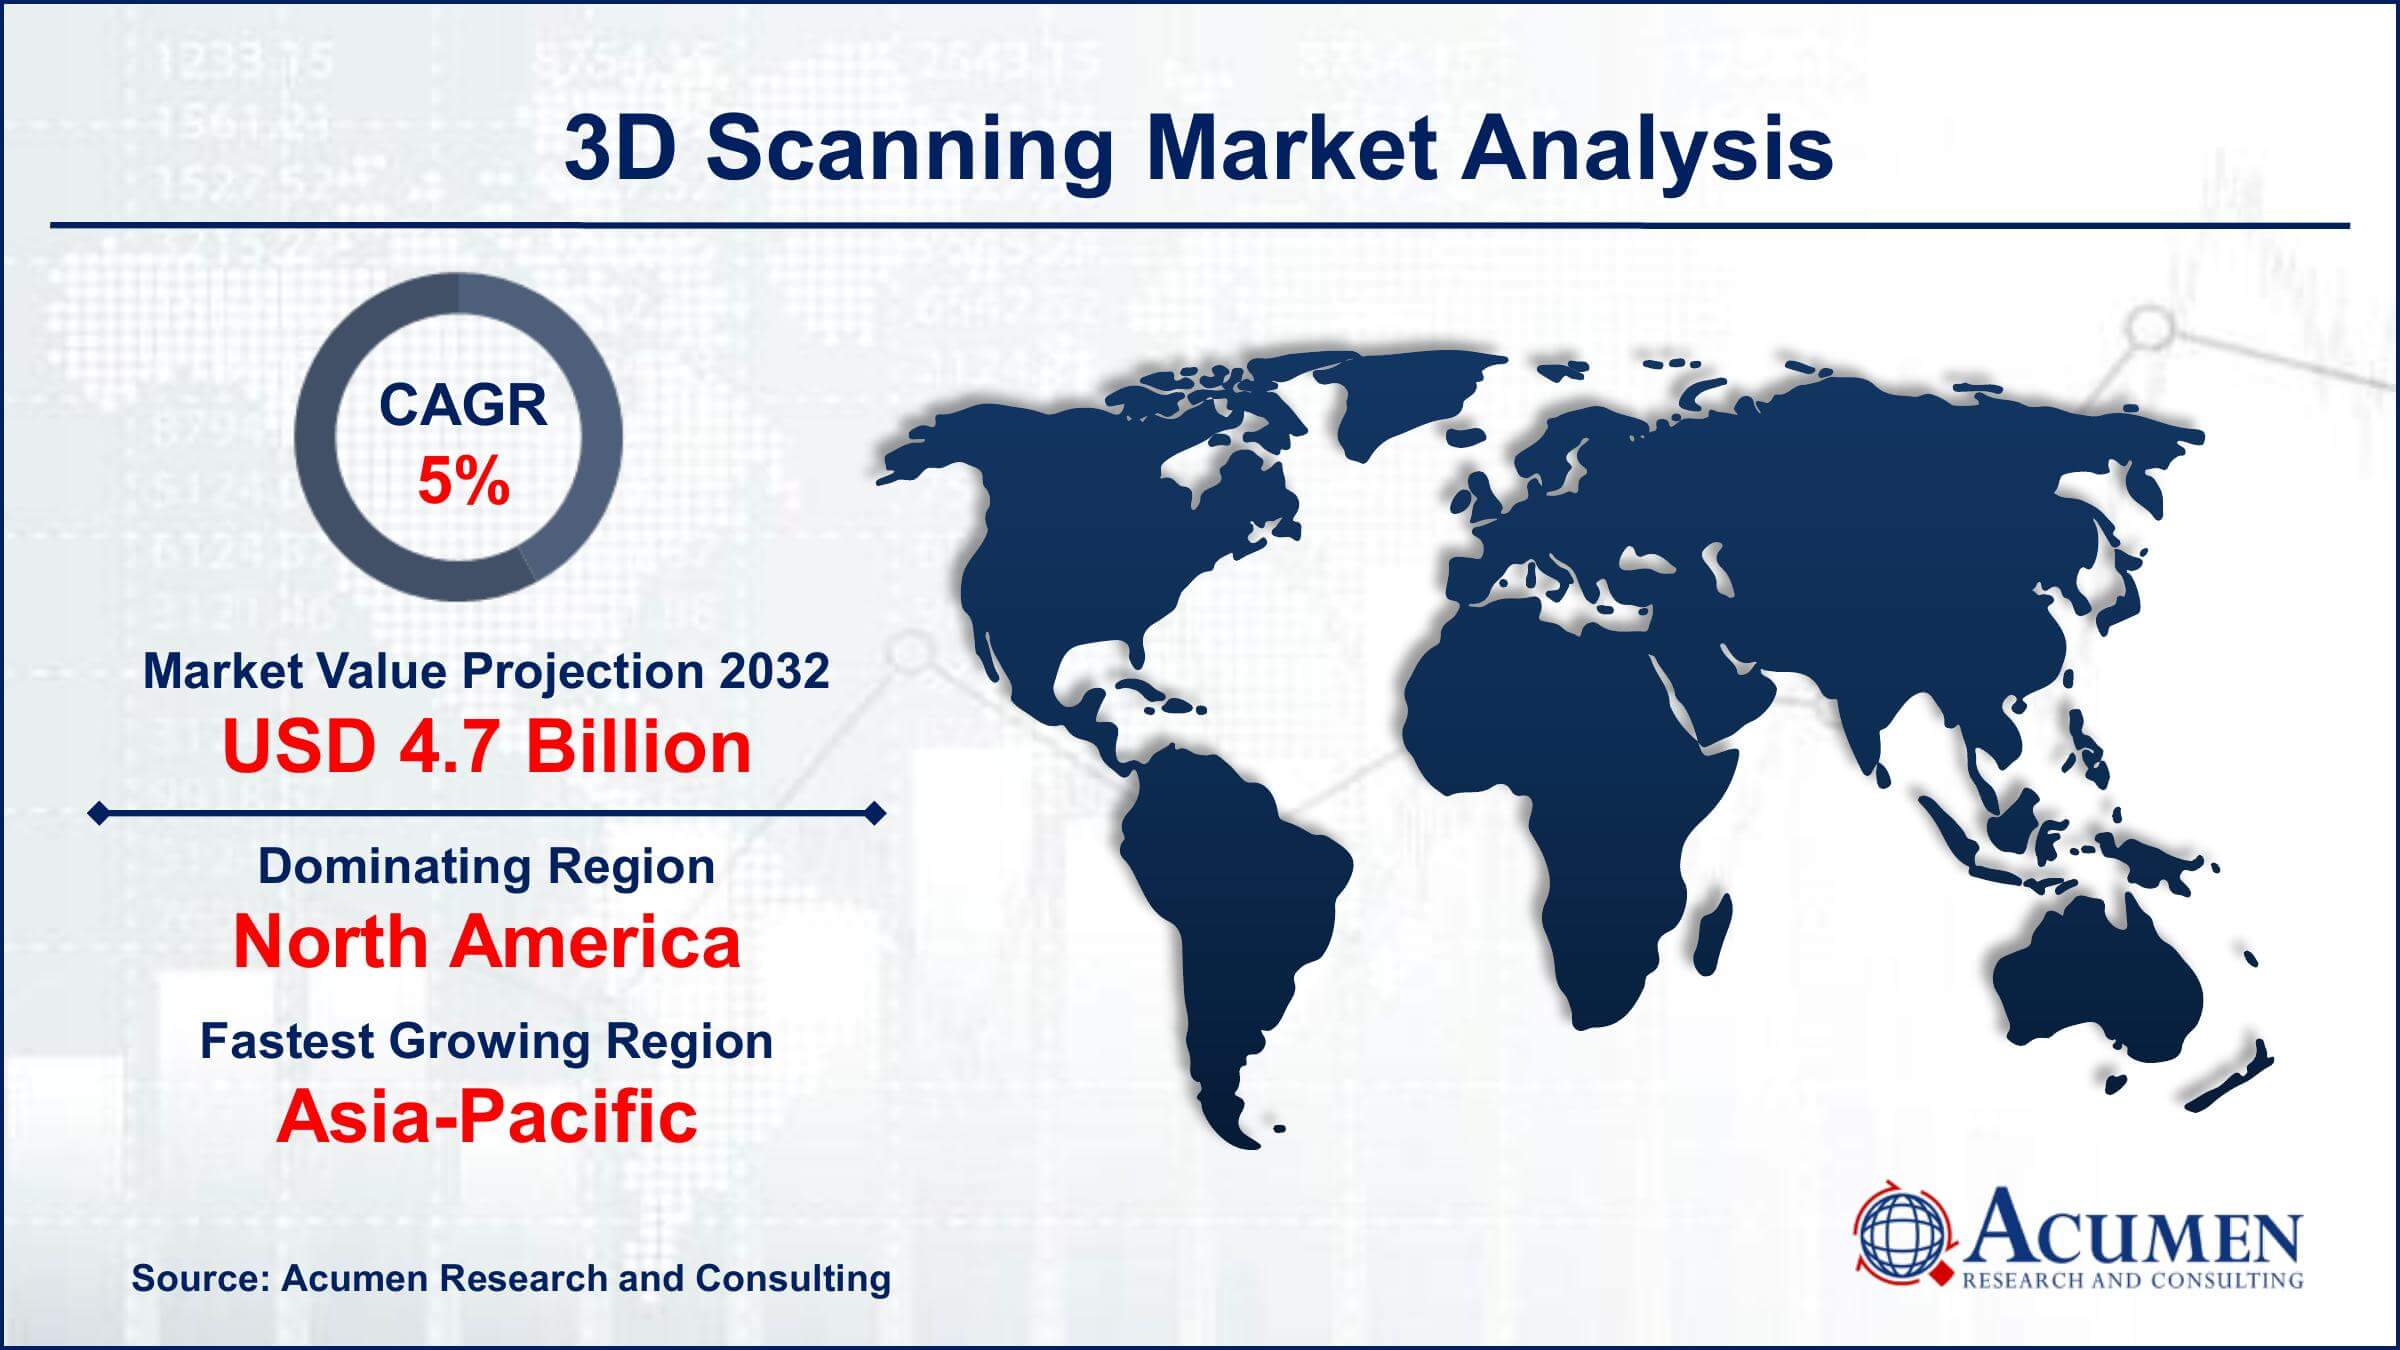 Global 3D Scanning Market Trends